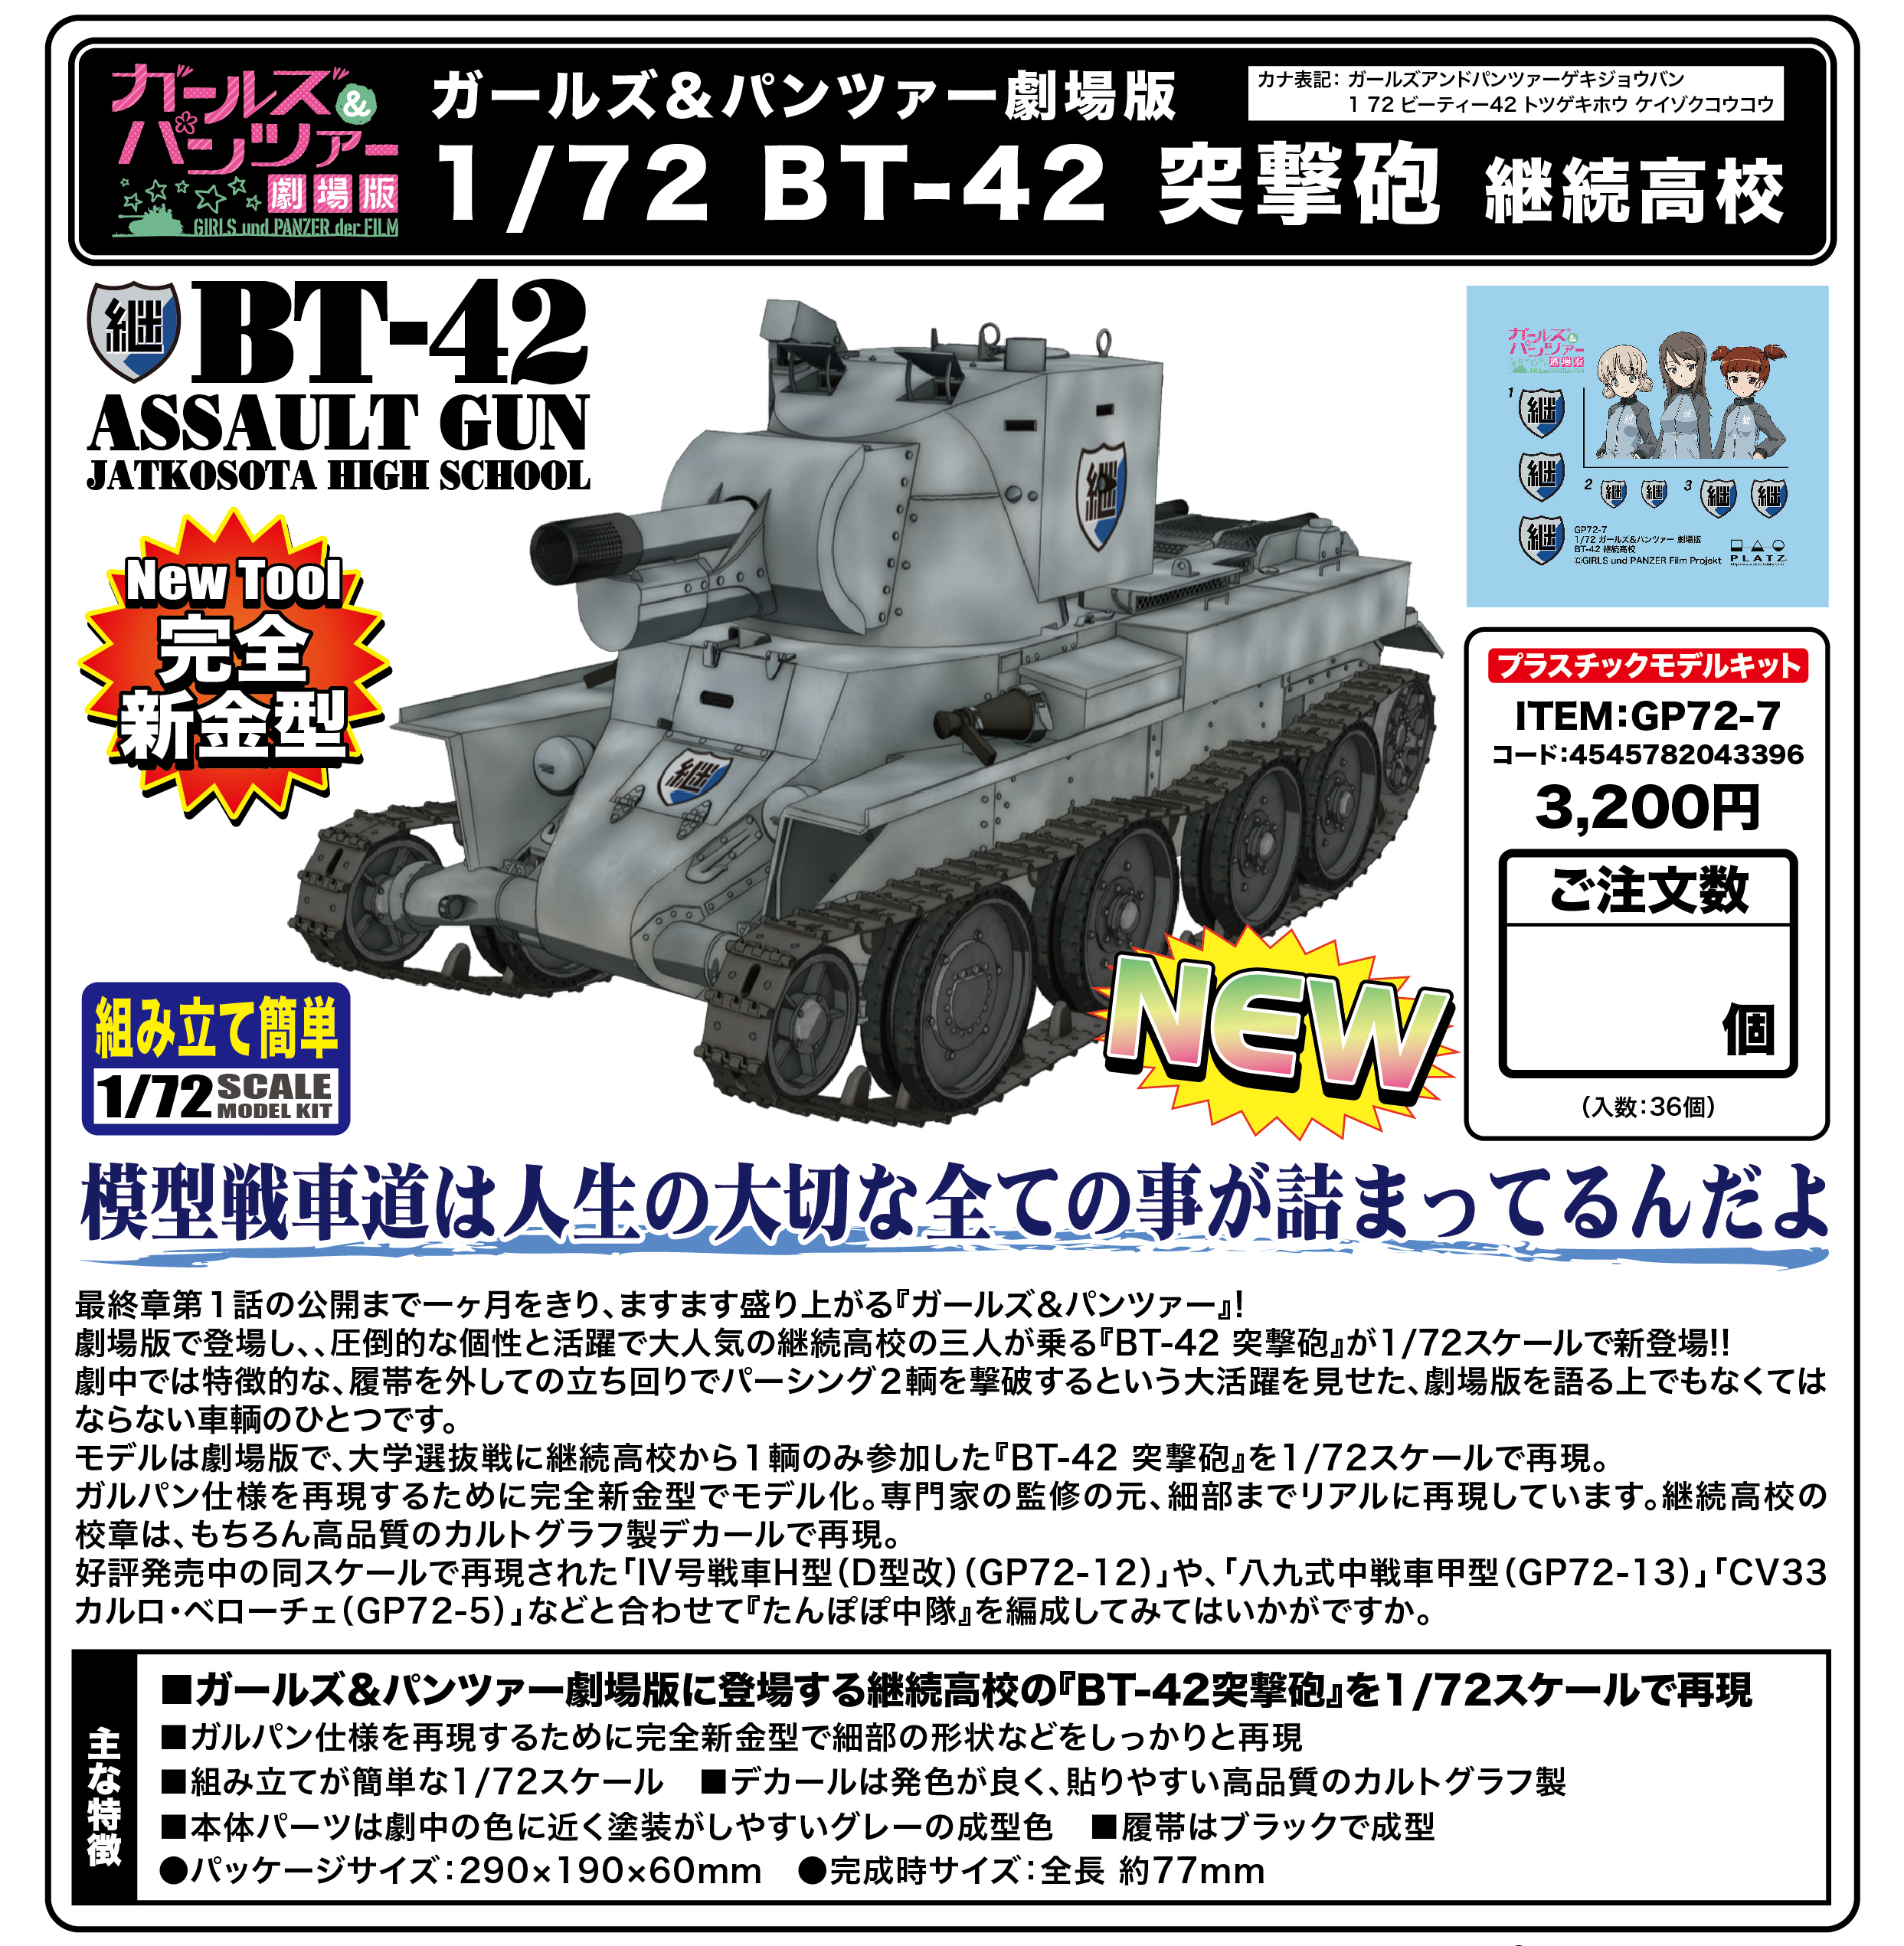 Girls Und Panzer Der Film 1 72 Bt 42 Assault Gun Keizoku High School Milestone Inc Product Detail Information